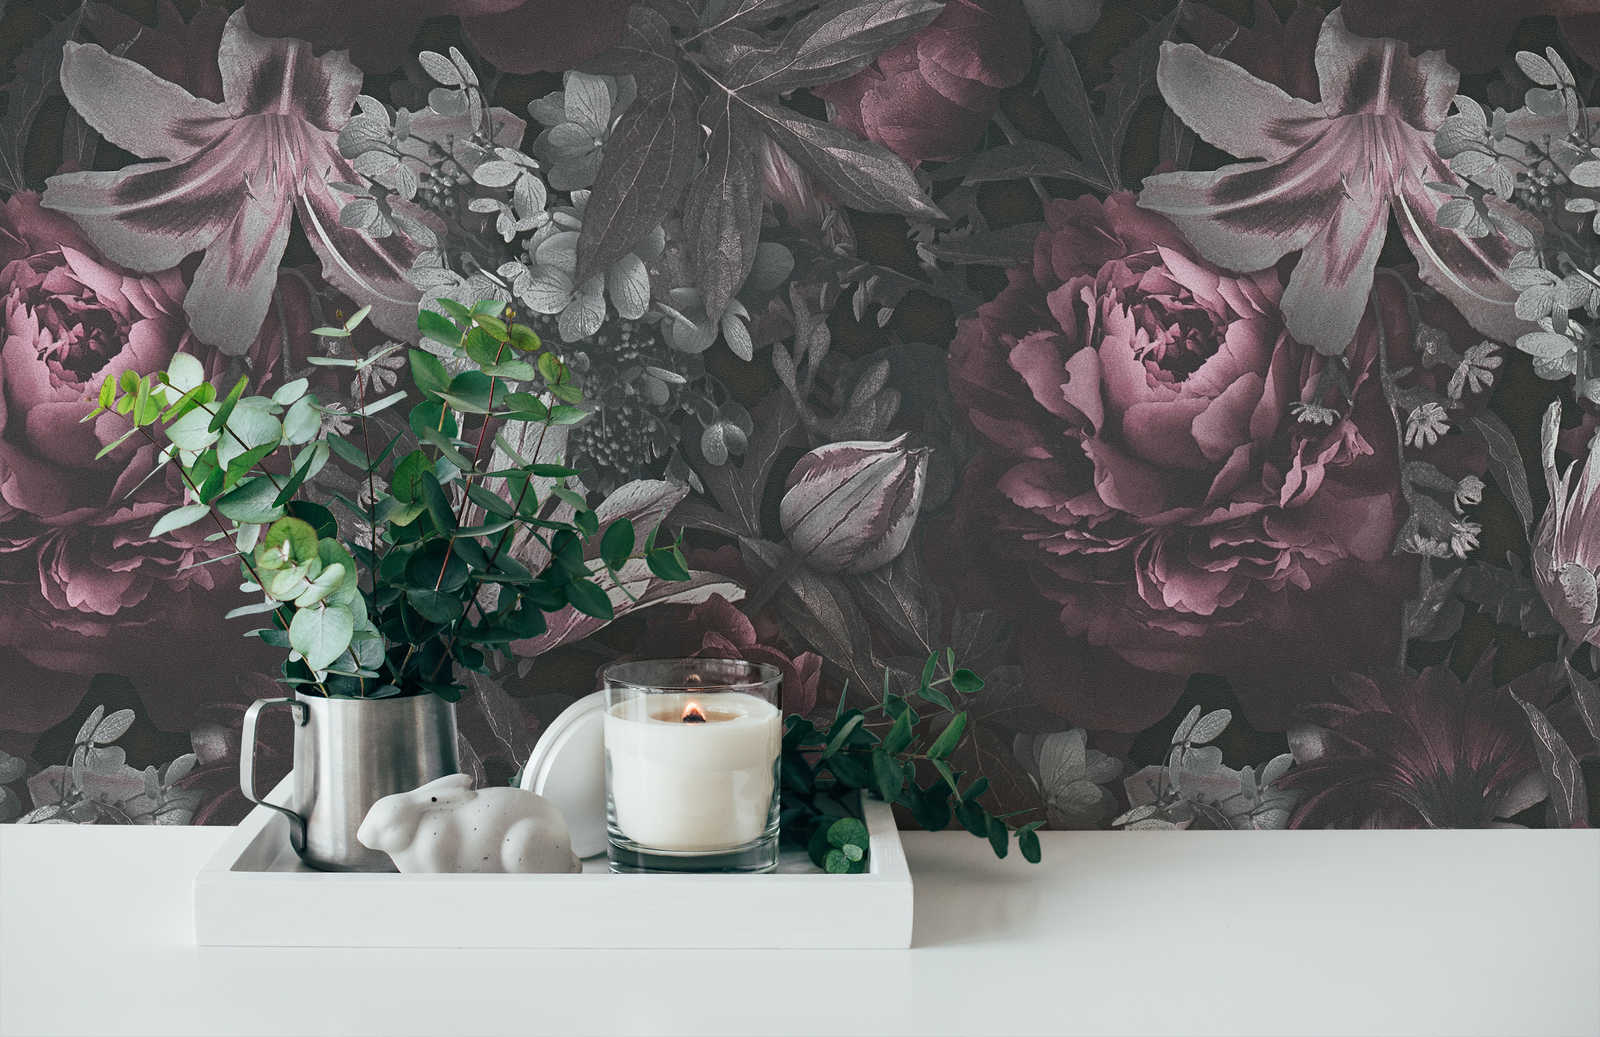             Papel pintado Rosas en flor en estilo pintura - gris, rosa, verde
        